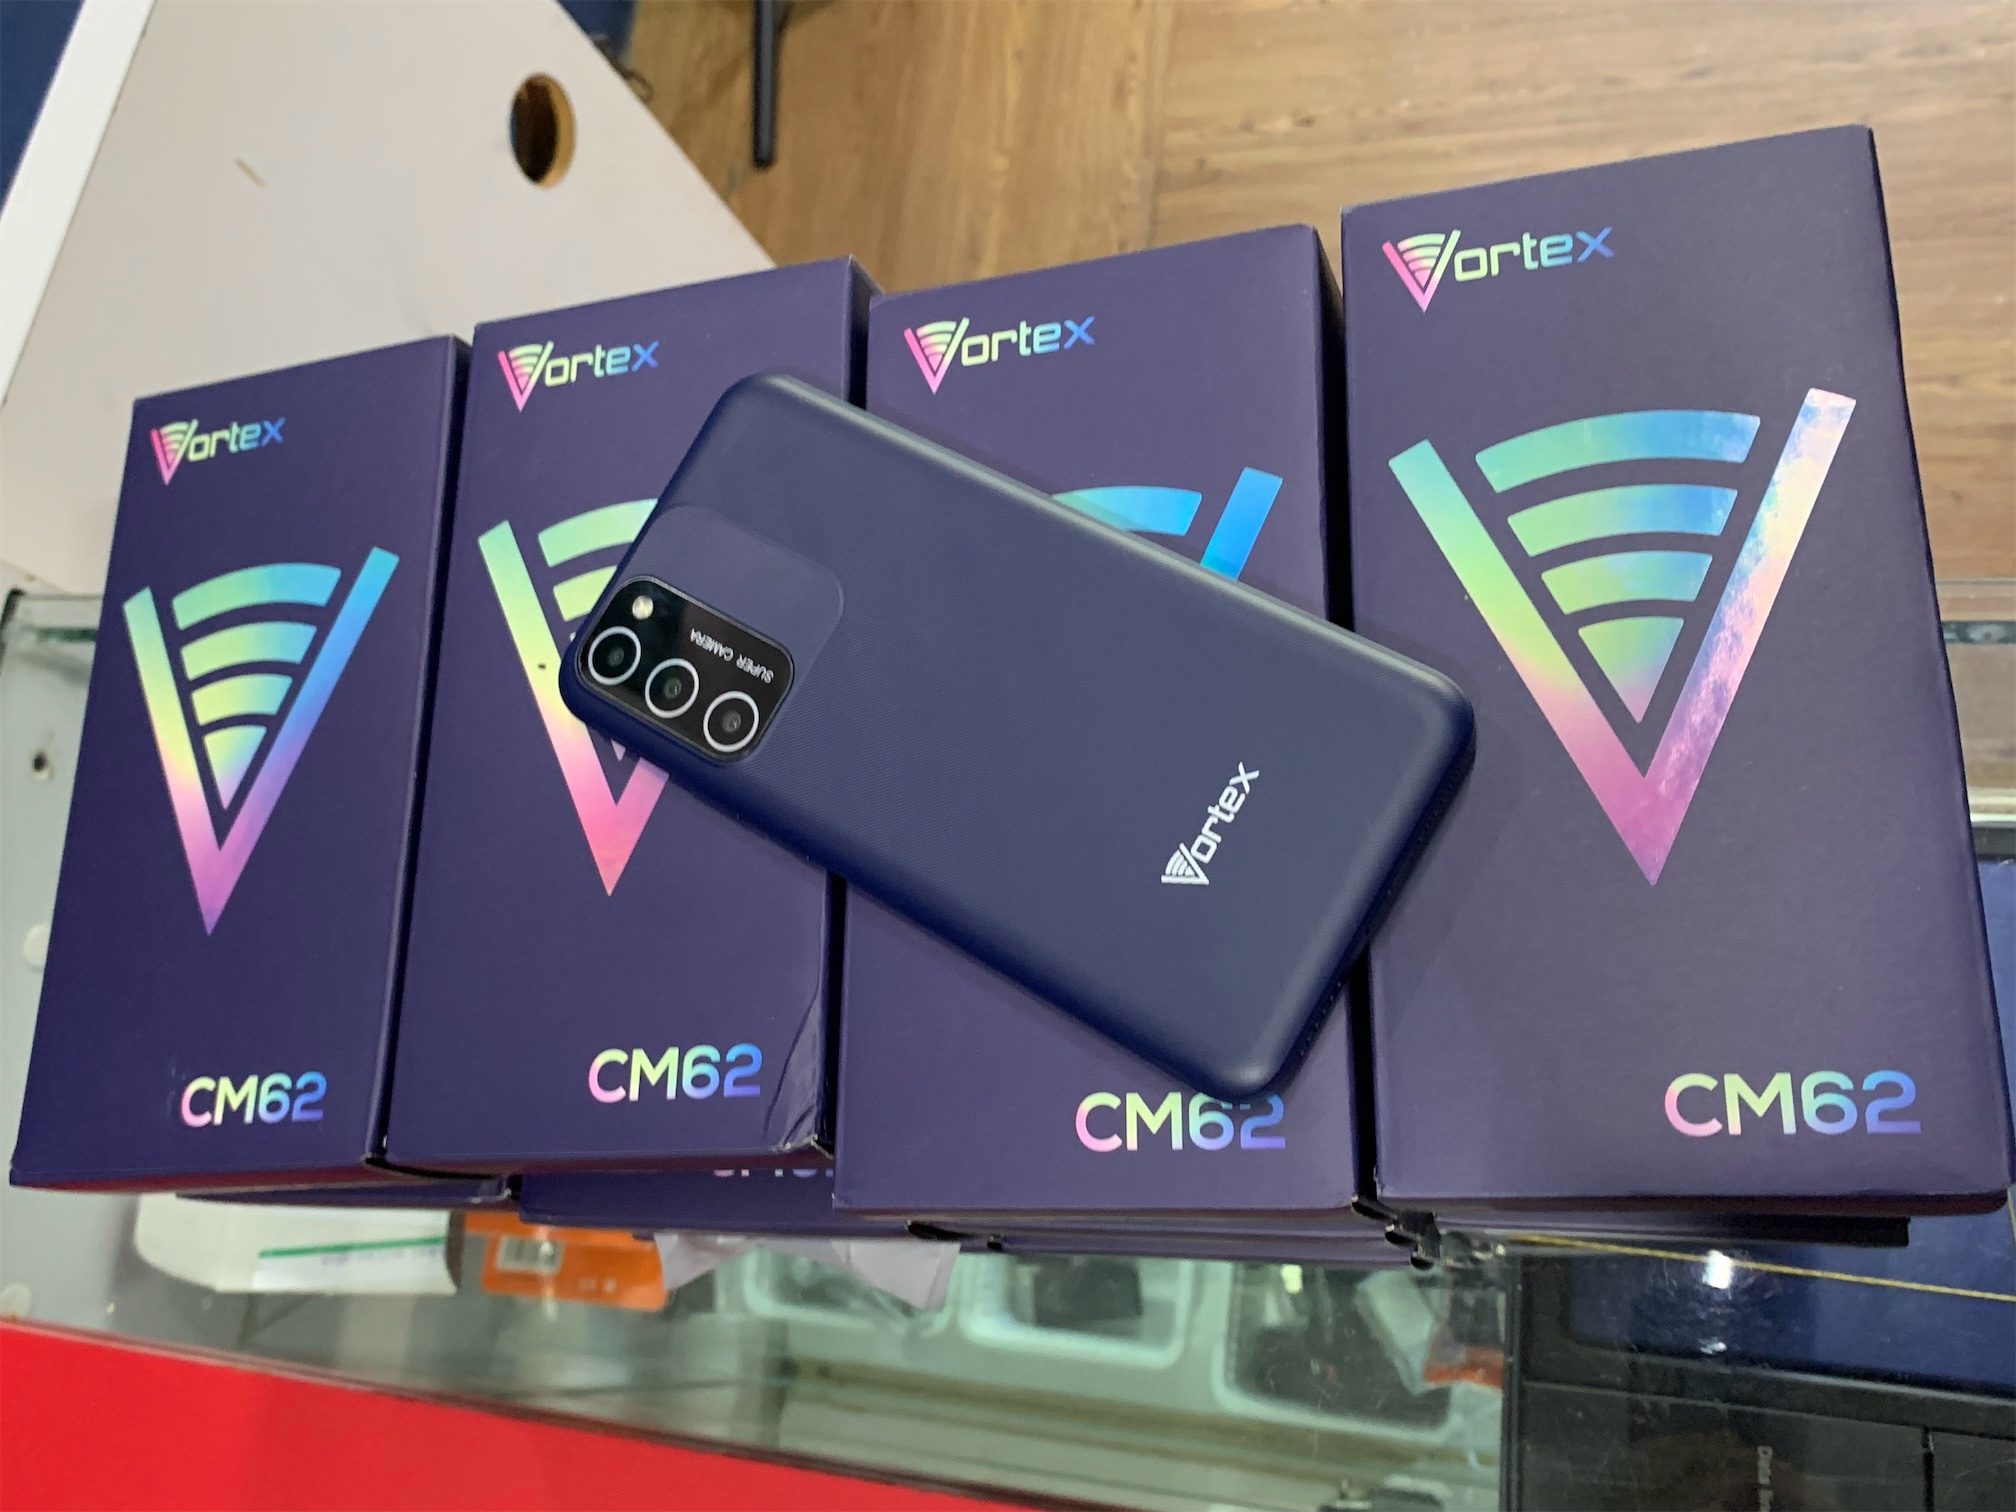 celulares y tabletas - VORTEX CM62 1